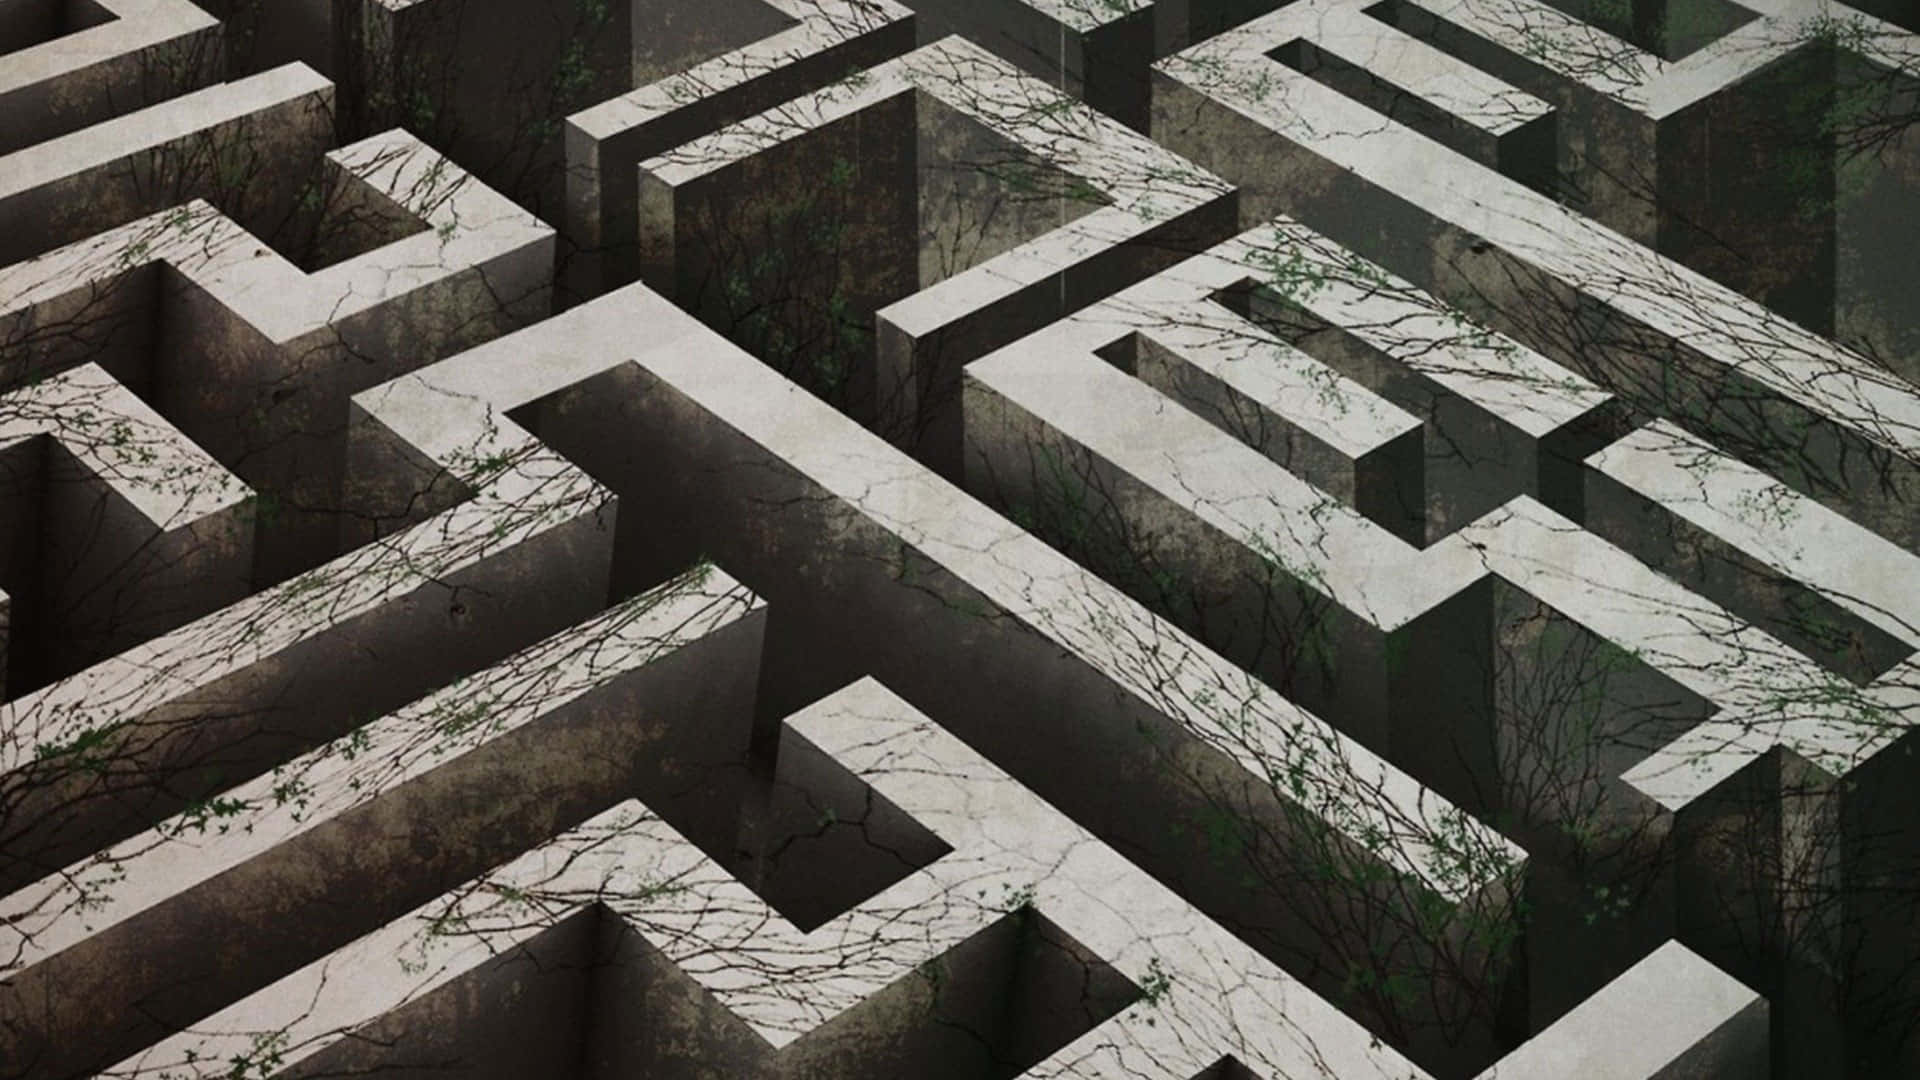 Caption: Thomas and friends navigate the dangerous Maze